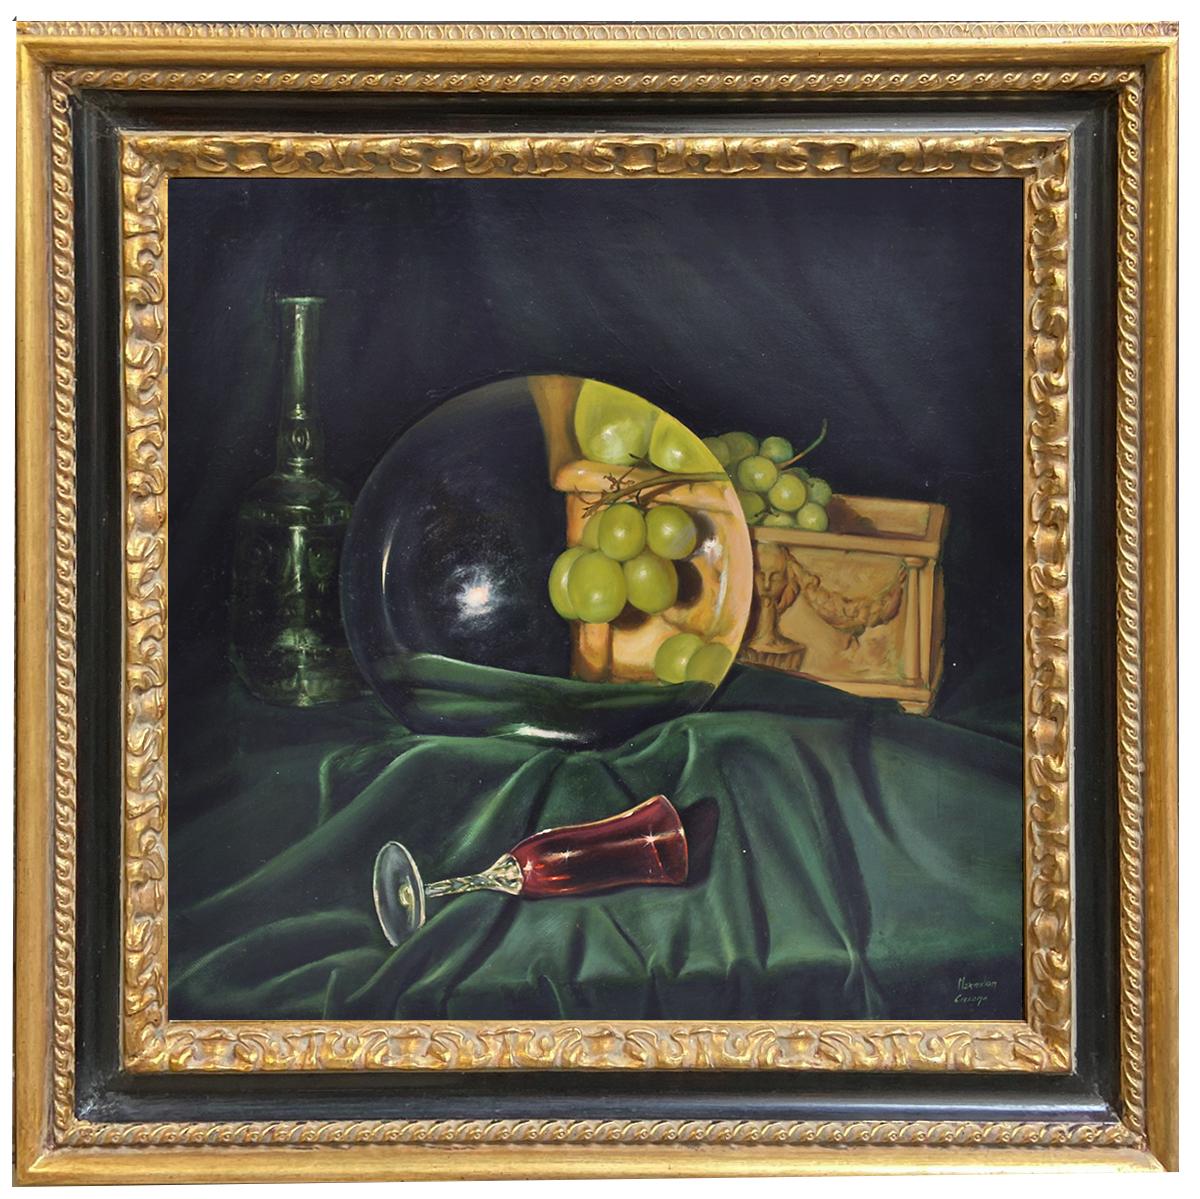 THE LENS AND THE GRAPES – Hyper- Realistisch- Stillleben Öl auf Leinwand Gemälde